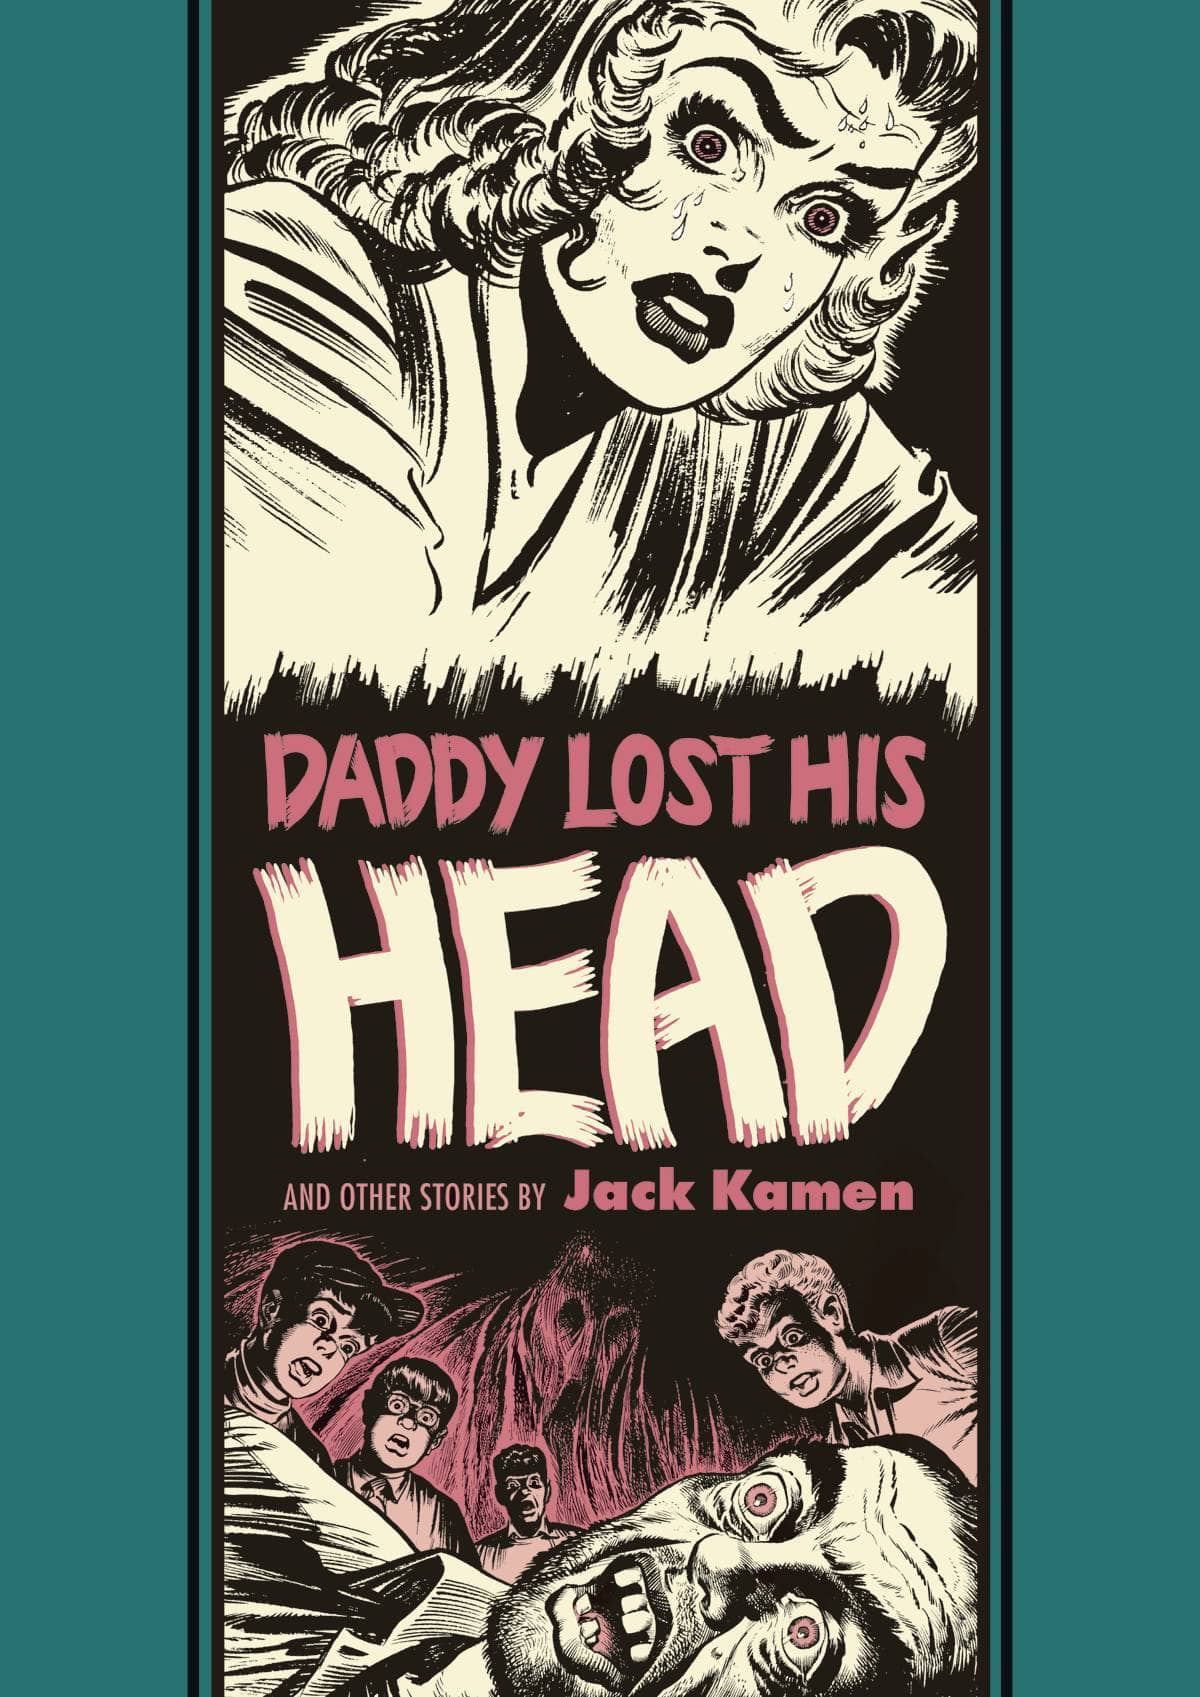 EC JACK KAMEN AL FELDSTEIN DADDY LOST HIS HEAD HC - Third Eye